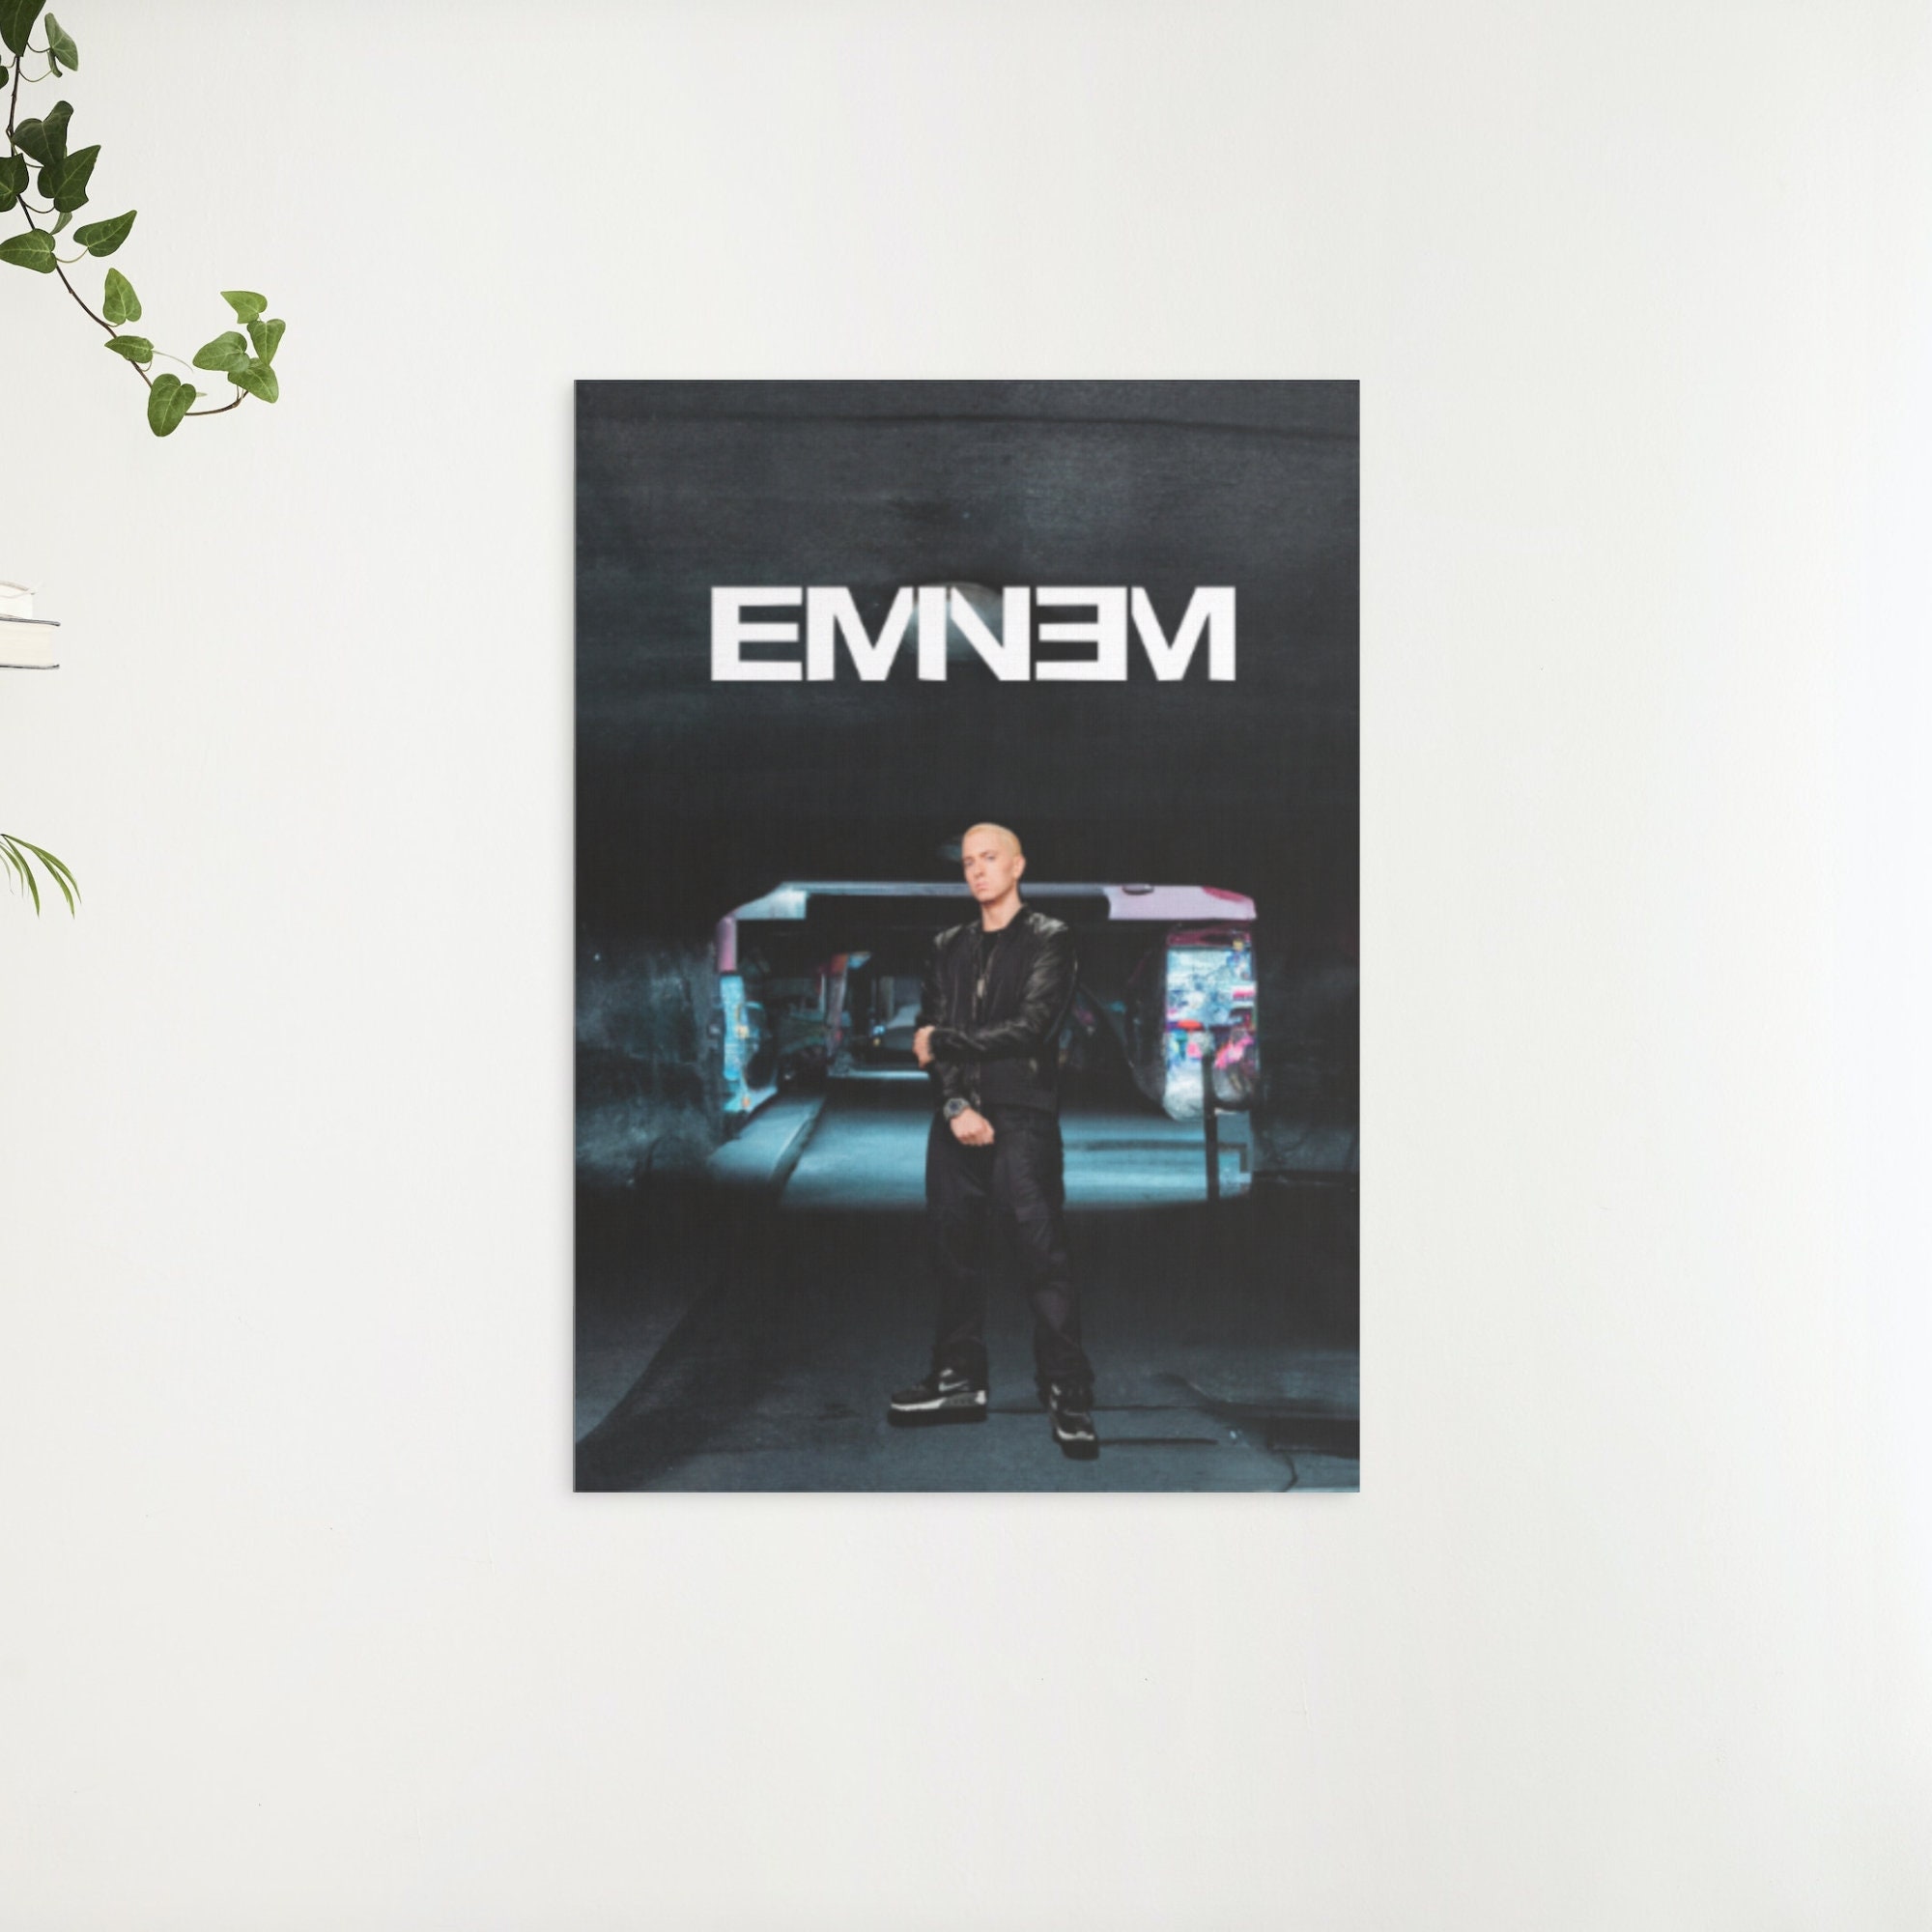 Eminem Poster by Vdasbx Vexel - Pixels